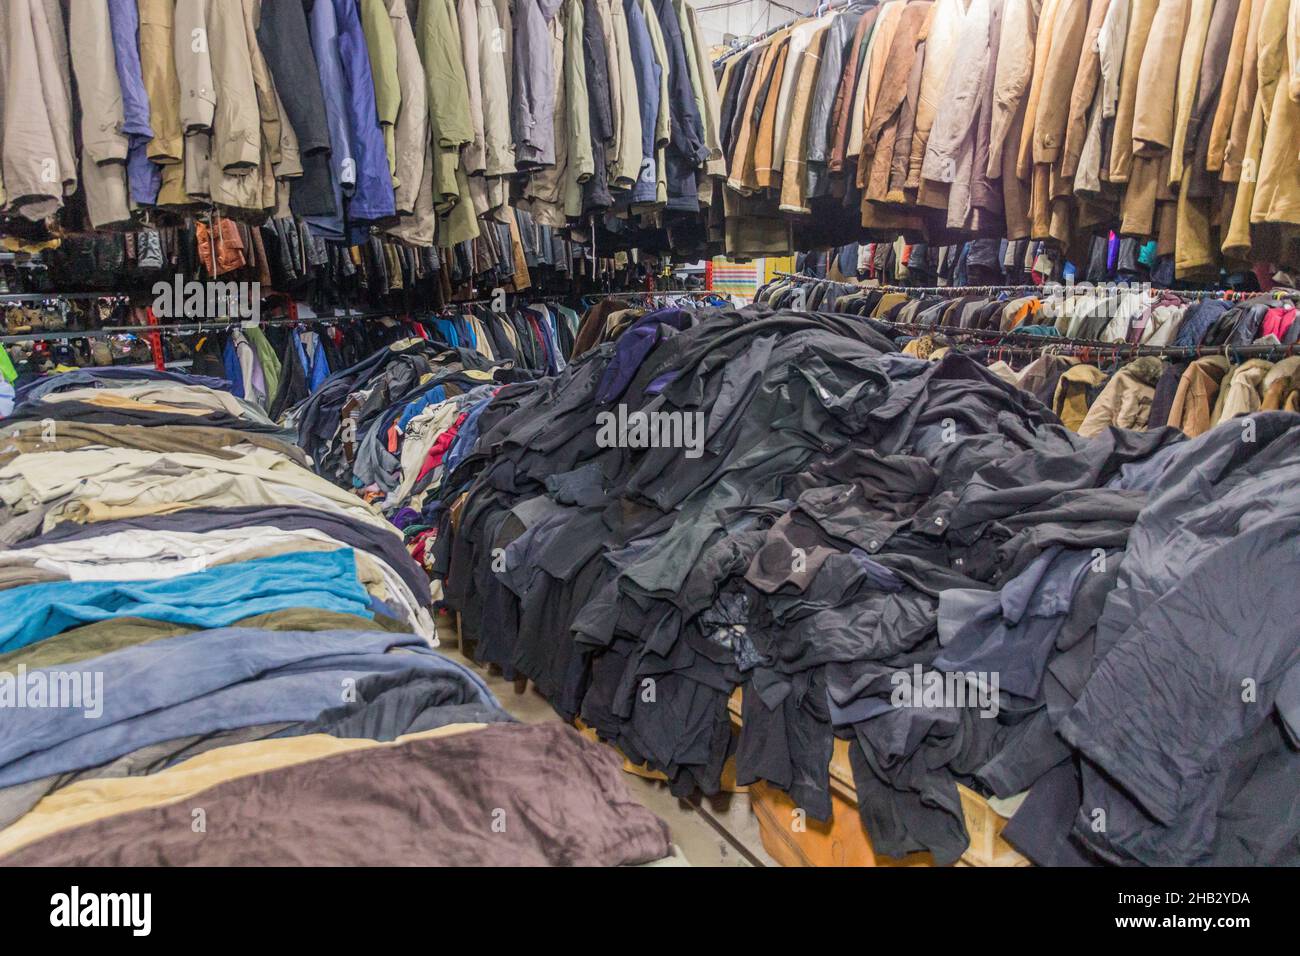 ARDABIL, IRÁN - 11 DE ABRIL de 2018: Mercancía en una tienda local de ropa en Ardabil, Irán Foto de stock